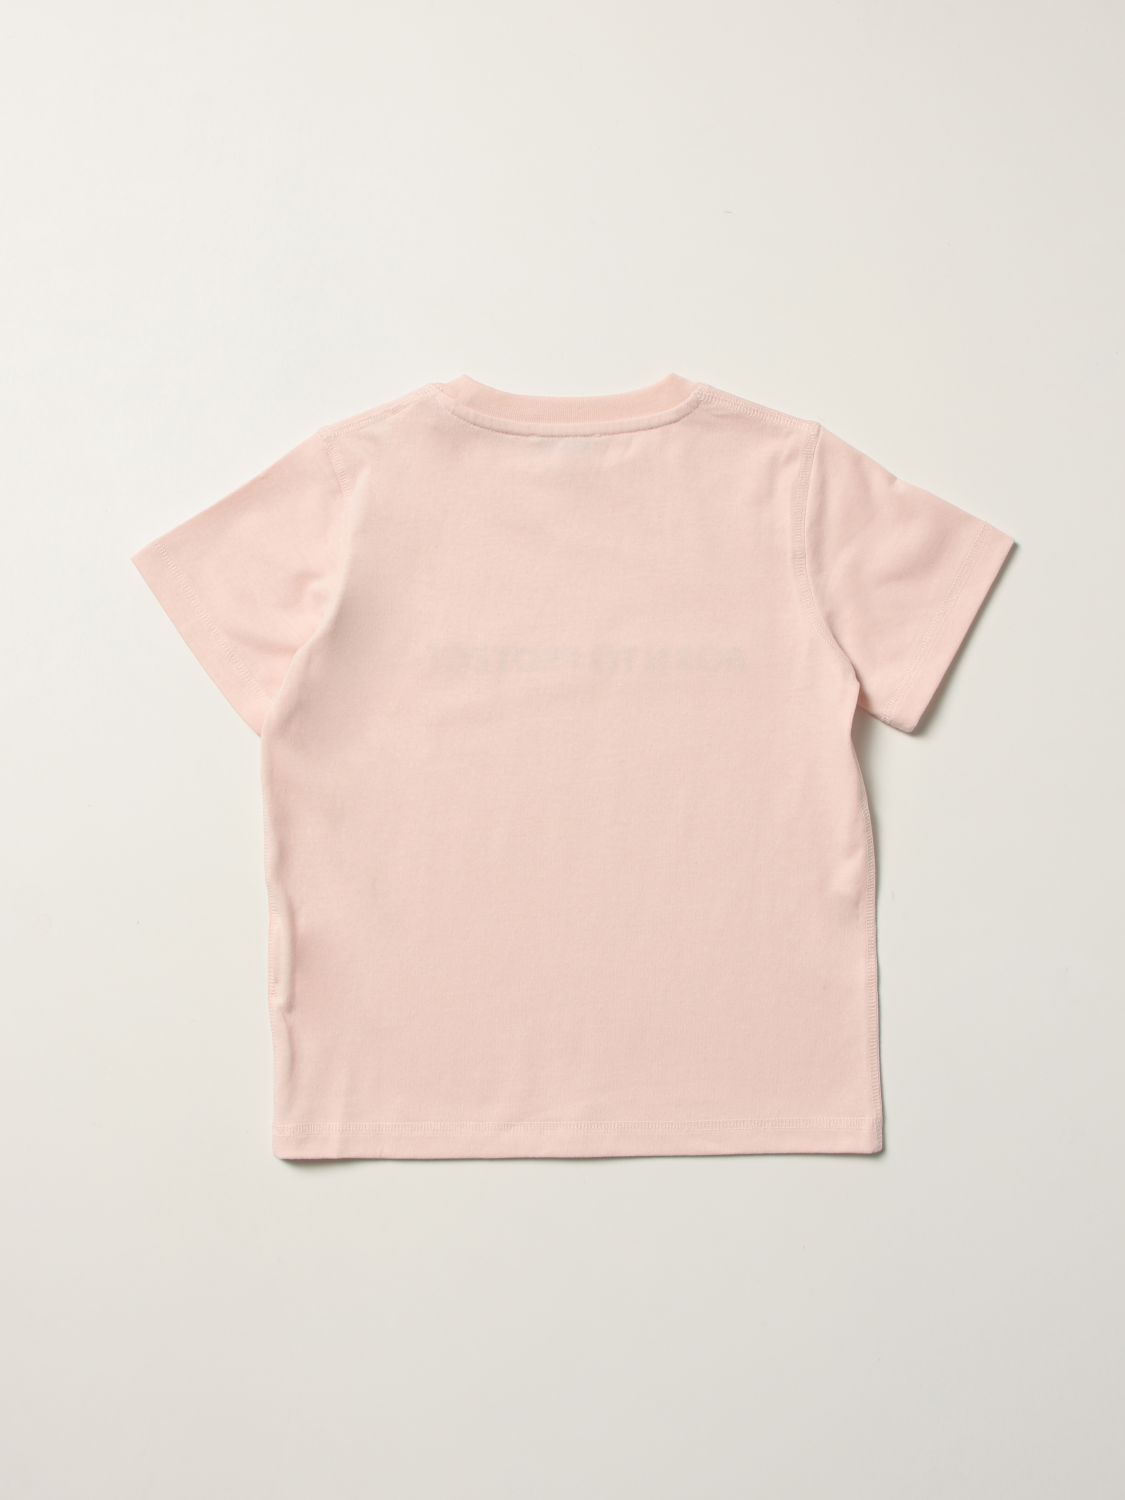 T恤 Moncler: T恤 儿童 Moncler 粉色 2